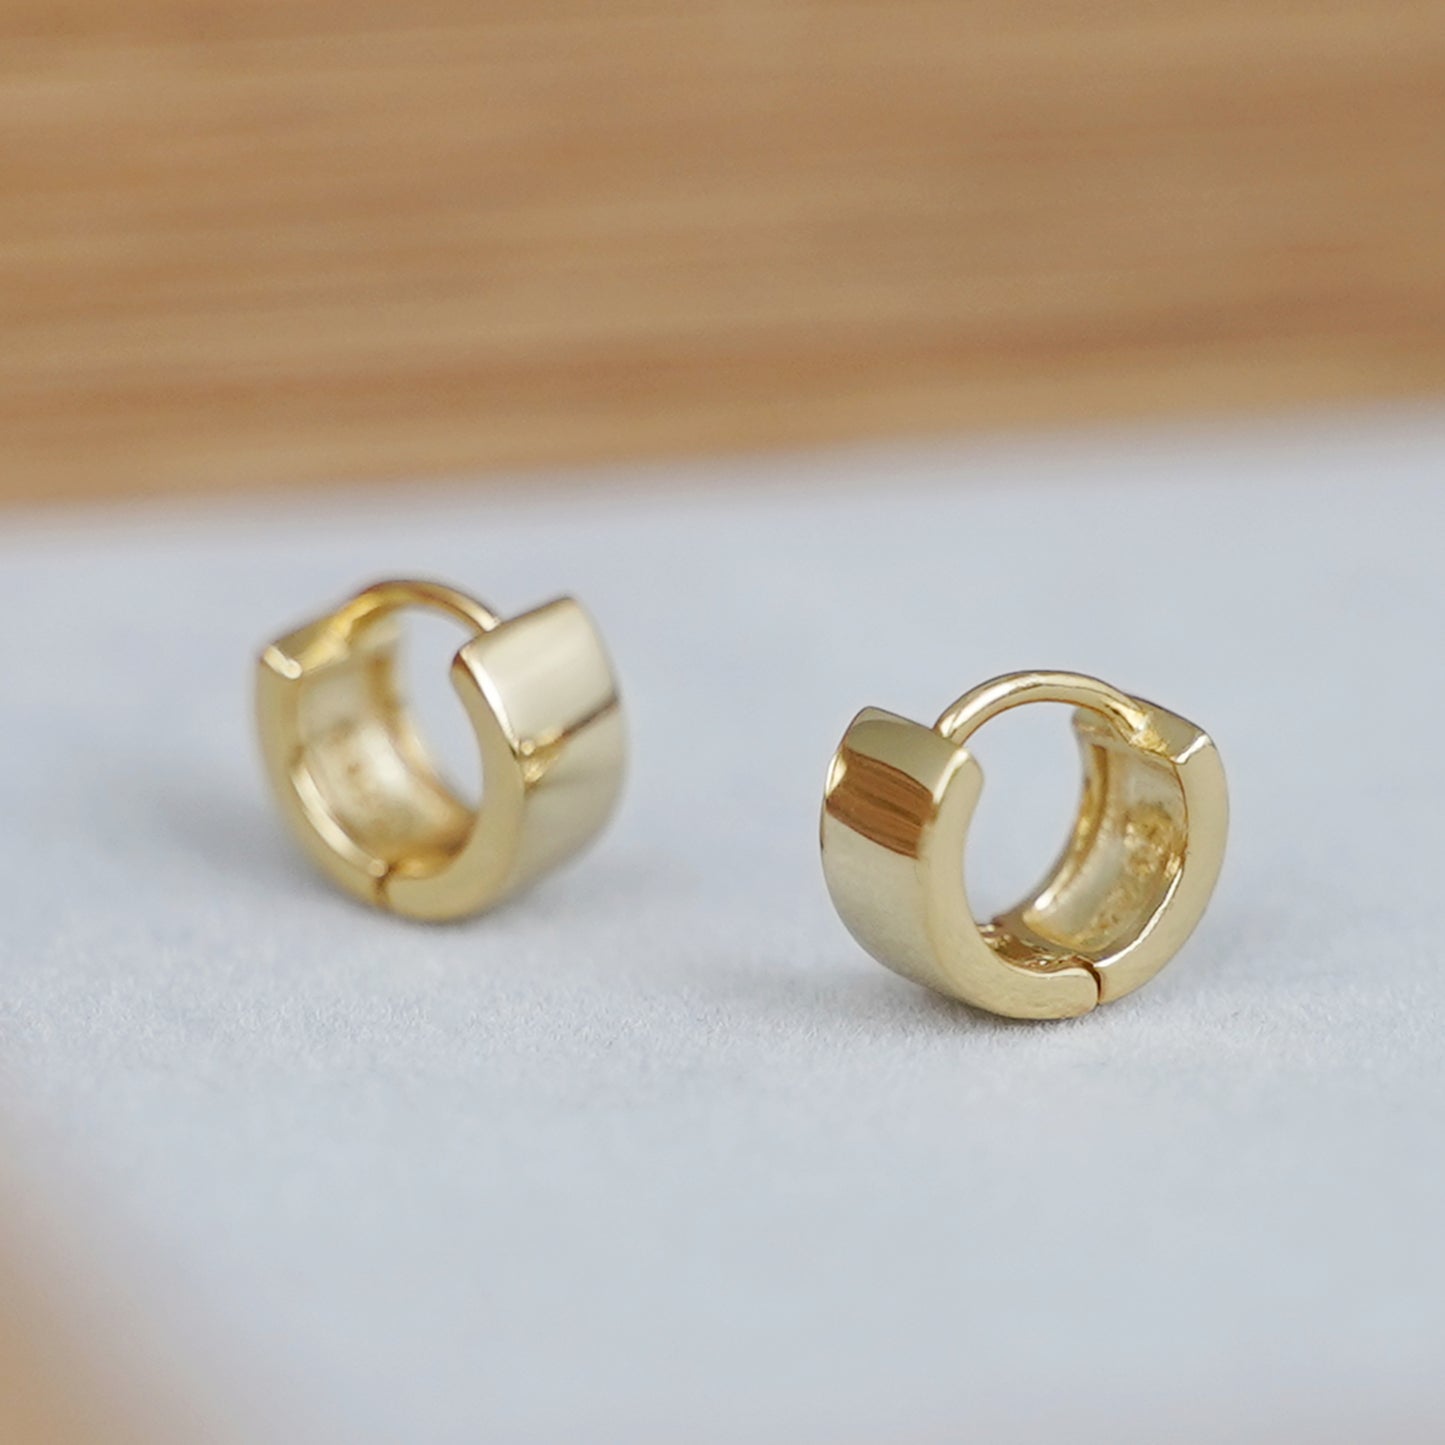 6.5mm Sterling Silver Hoop Huggie Earrings in Gold & Silver. - sugarkittenlondon